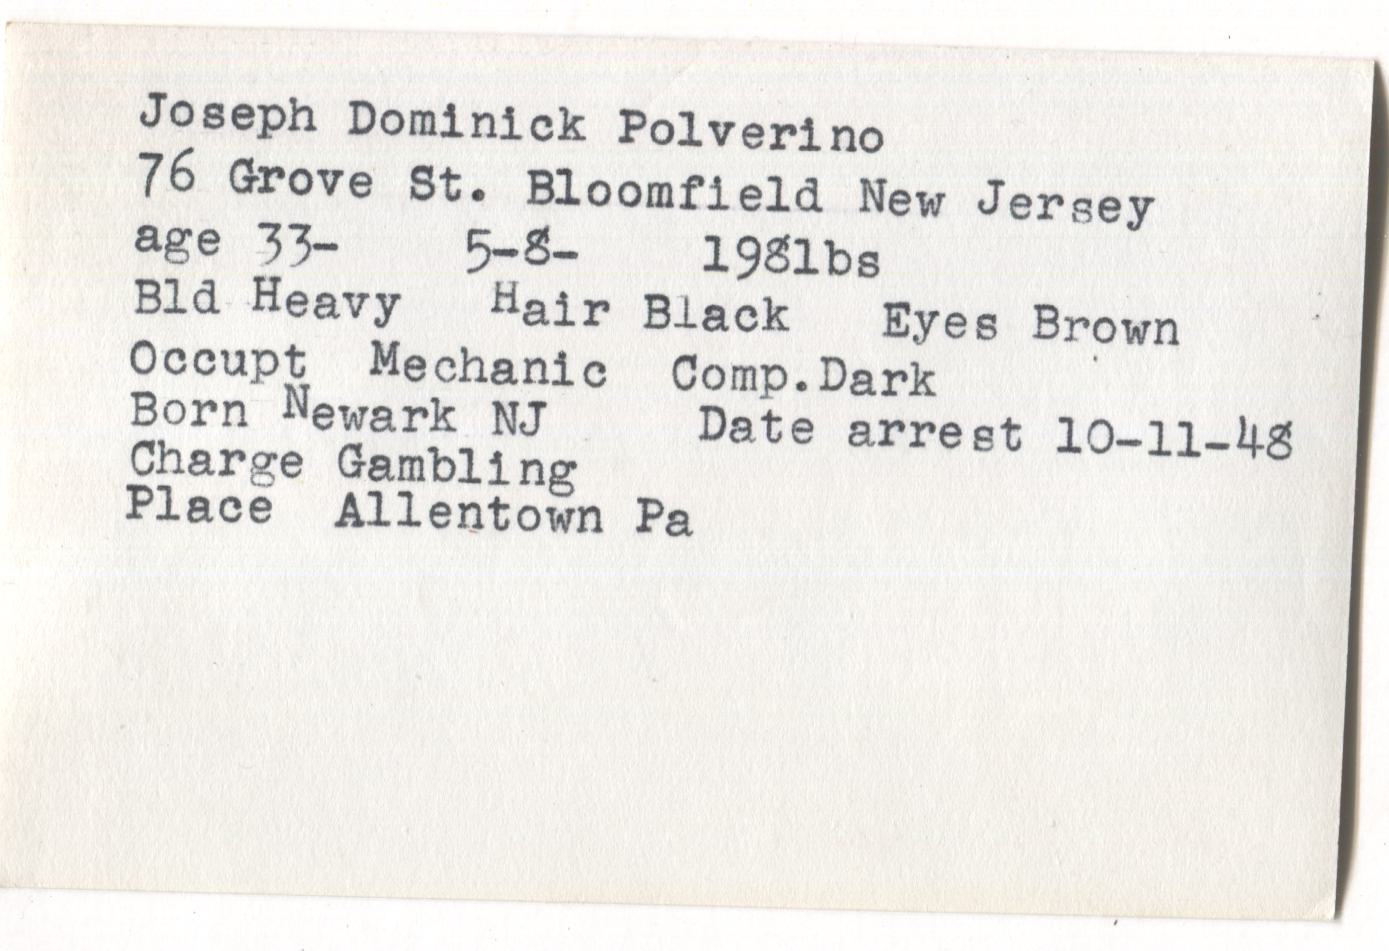 Joseph Dominick Polverino Mugshot - Arrested on 10/11/1948 for Gambling